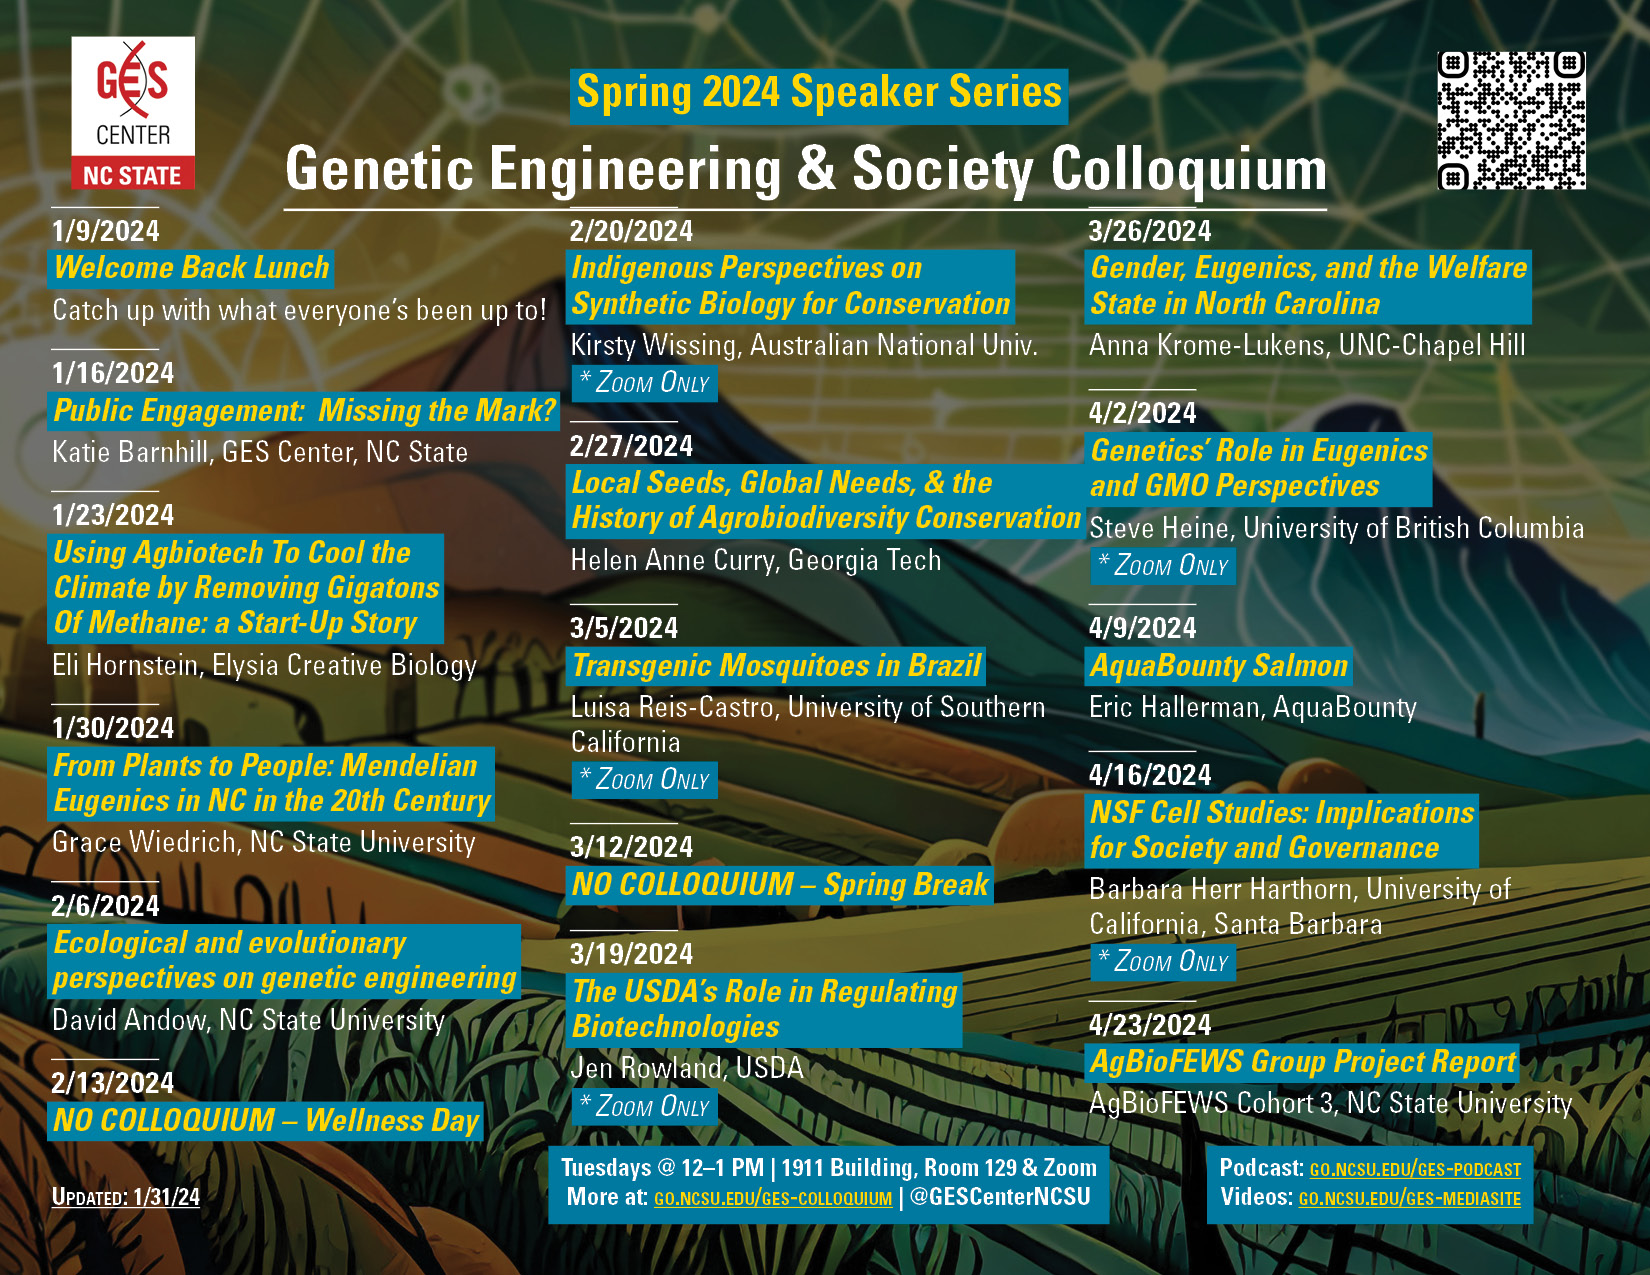 Spring Colloquium flyer - download at https://go.ncsu.edu/ges-colloquium-flyer-s24